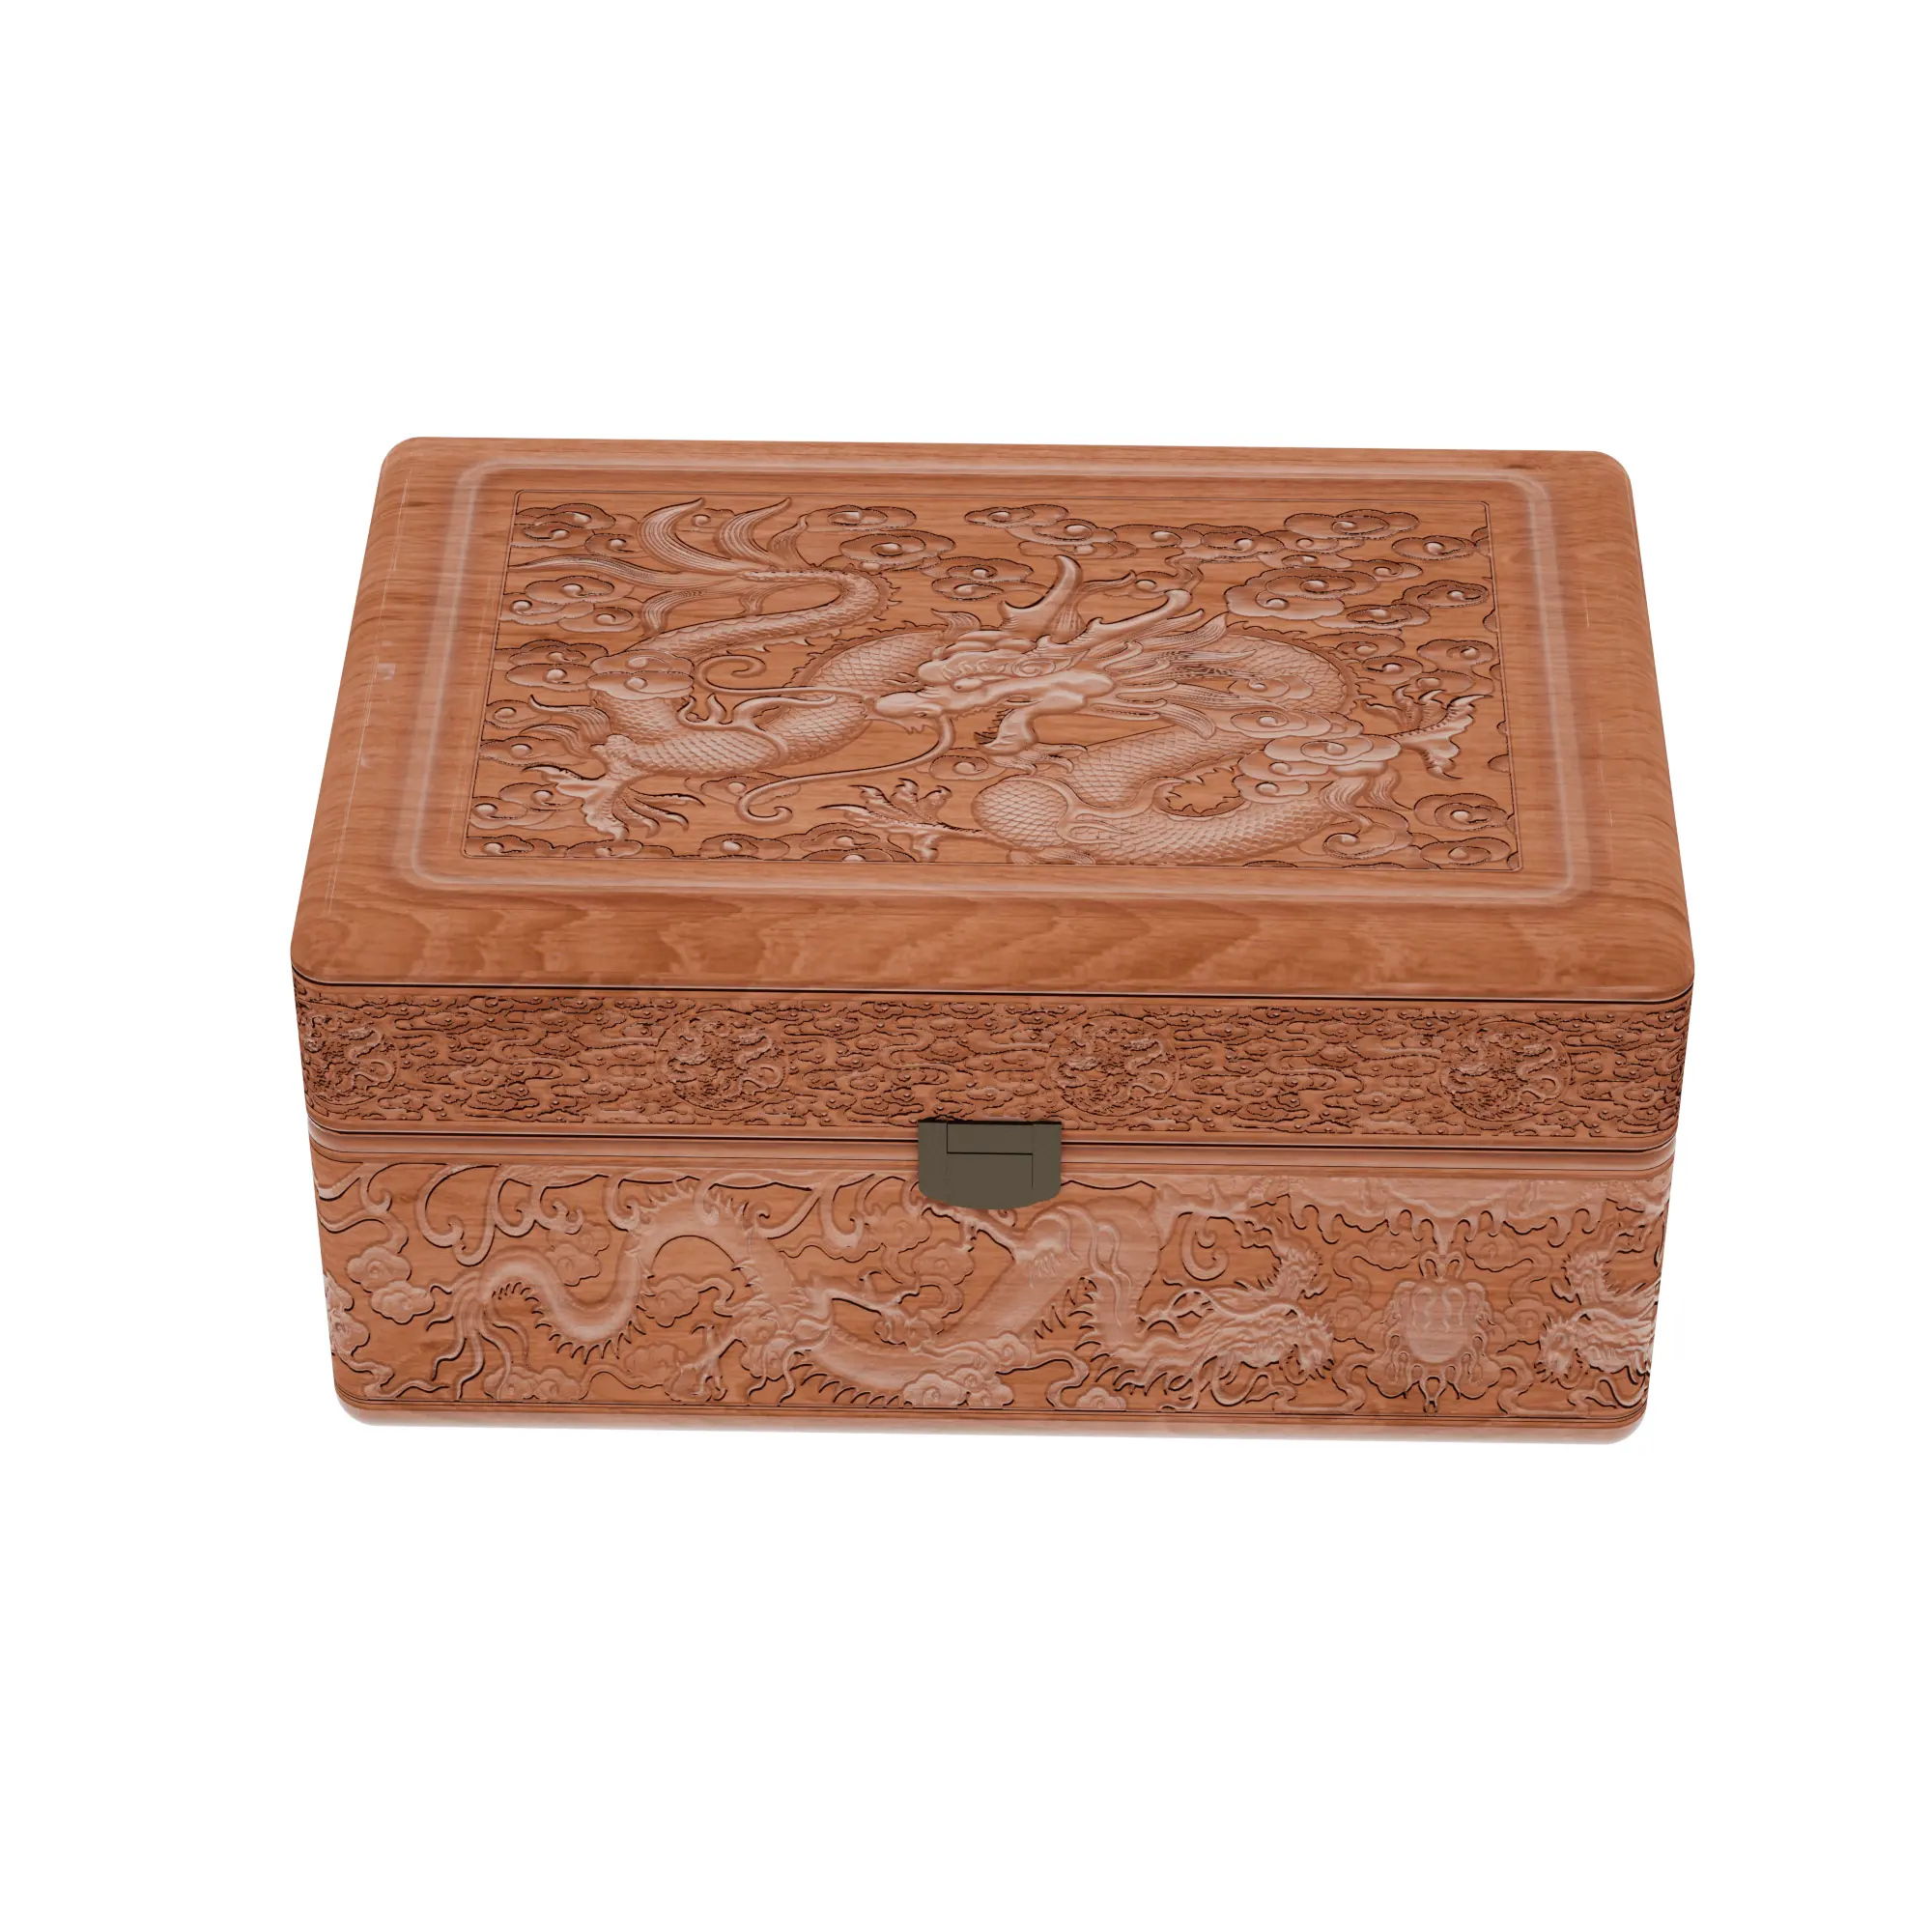 Caixas de madeira artesanais sortidas, feitas à mão, com inposição de metal, design em caixa de presente de madeira retangular